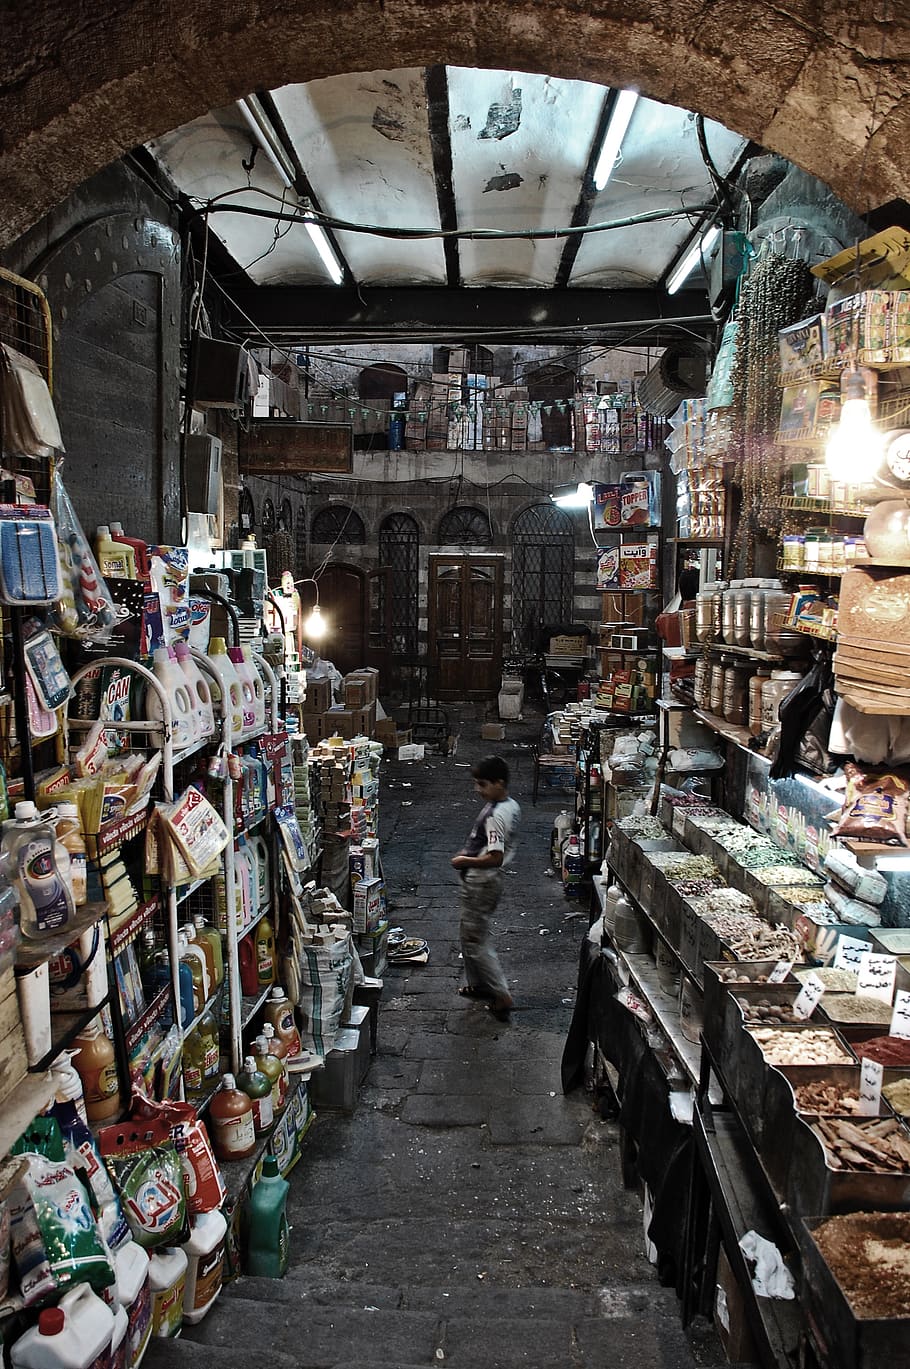 damascus, syria, goods, old, kid, turnning, market, retail